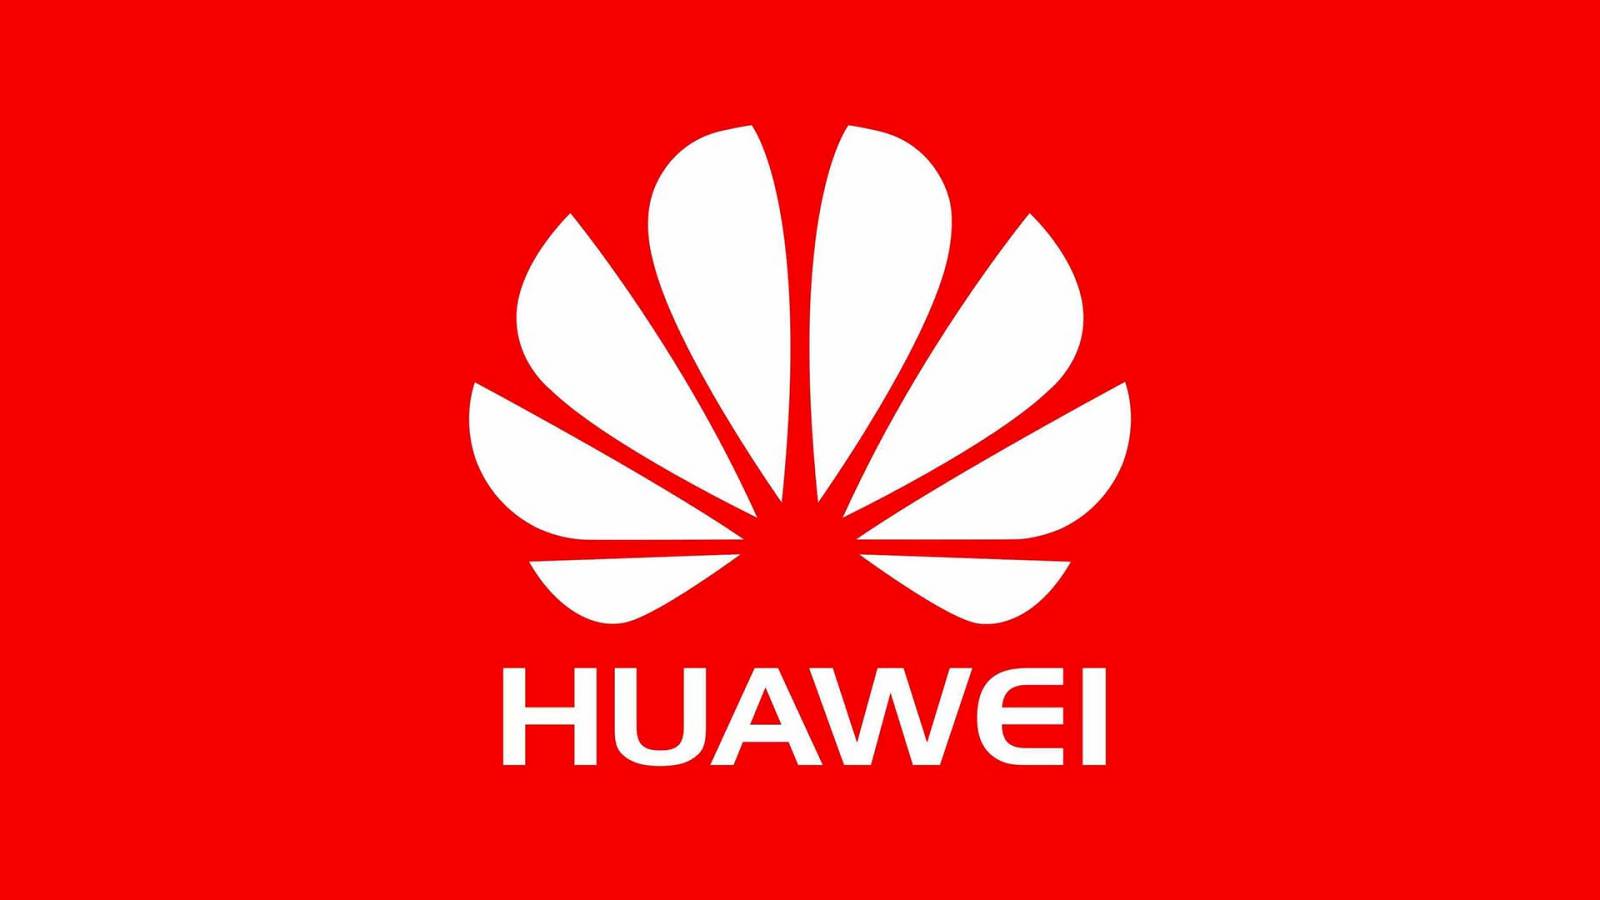 Huawei tsmc